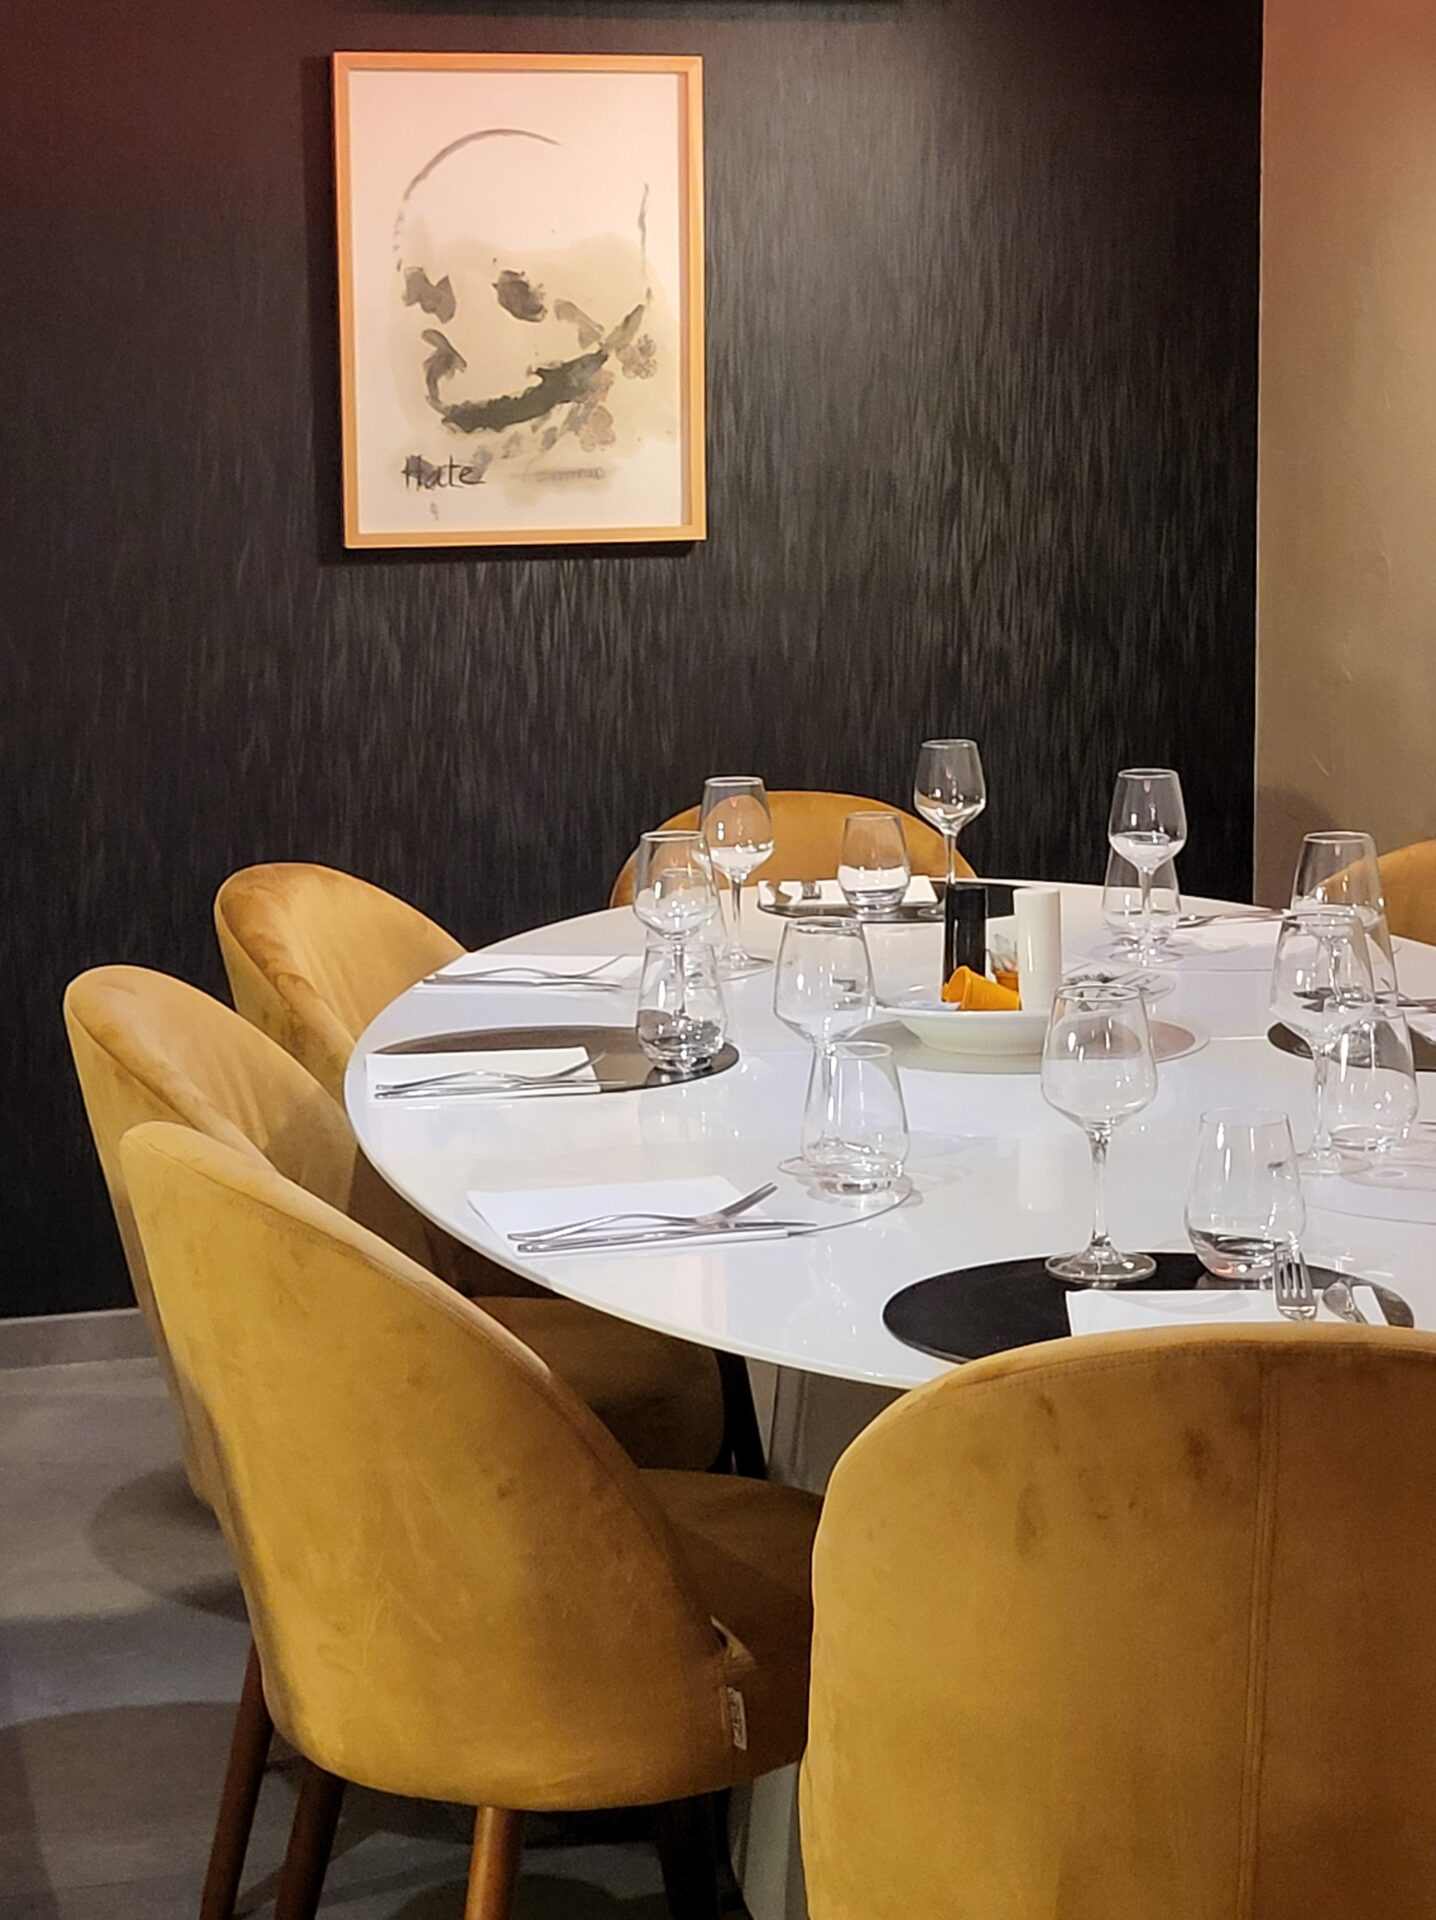 Restaurant Le Poulpe - la table d'hôte